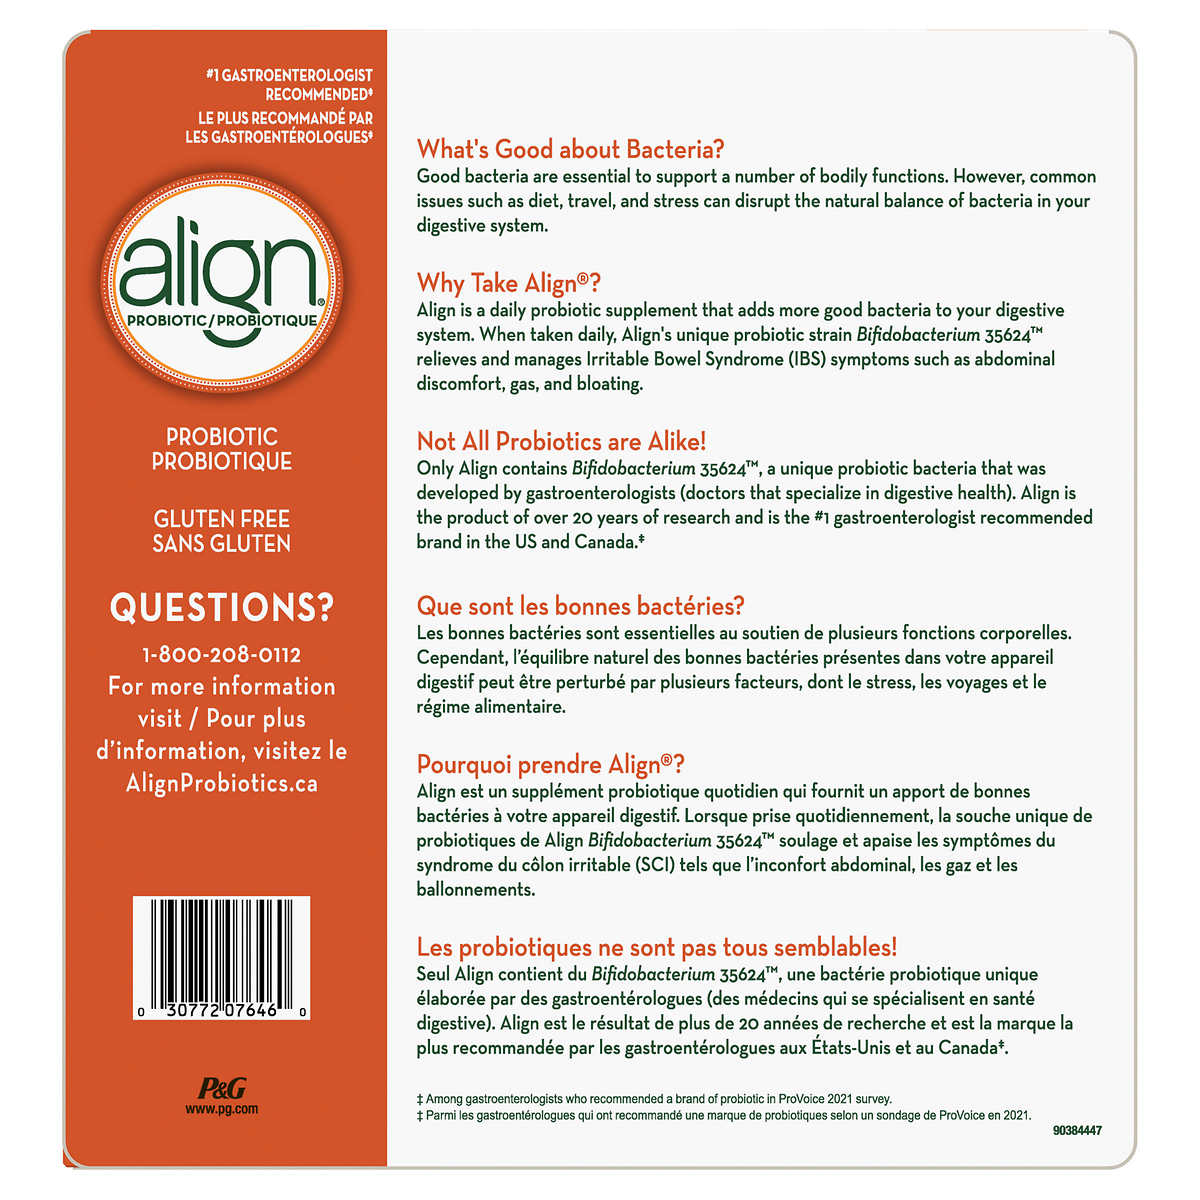 Align Probiotic Supplement, 77 Capsules